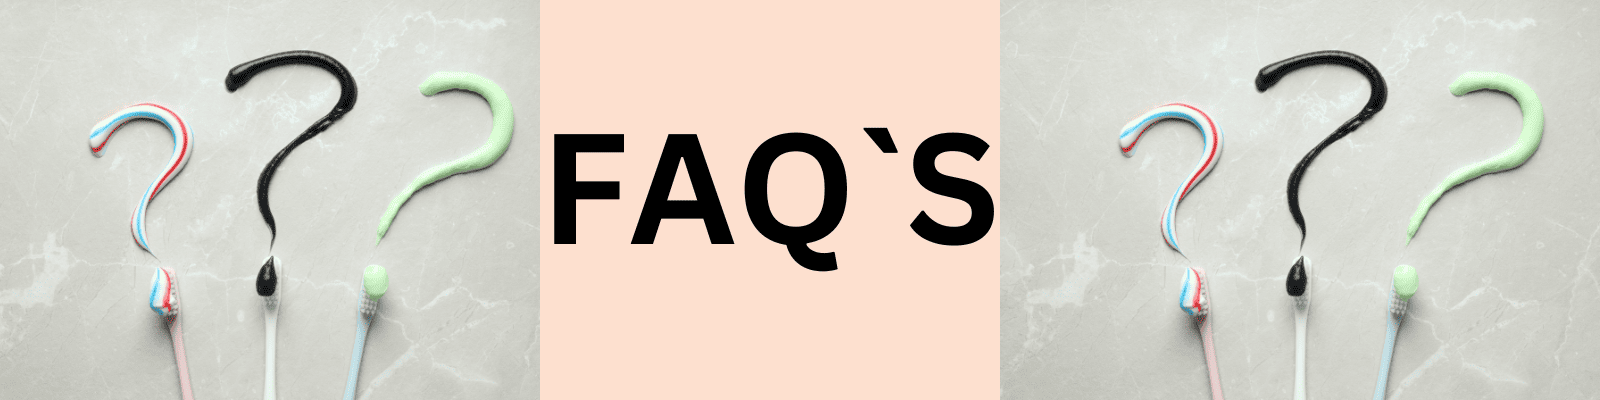 FAQ oder Q&A zu den wichtigsten Fragen unserer Kunden. Wir erweitern ständig die aktuelle Übersicht der Fragen Besterzahnschutz24.de Zahnzusatzversicherungen